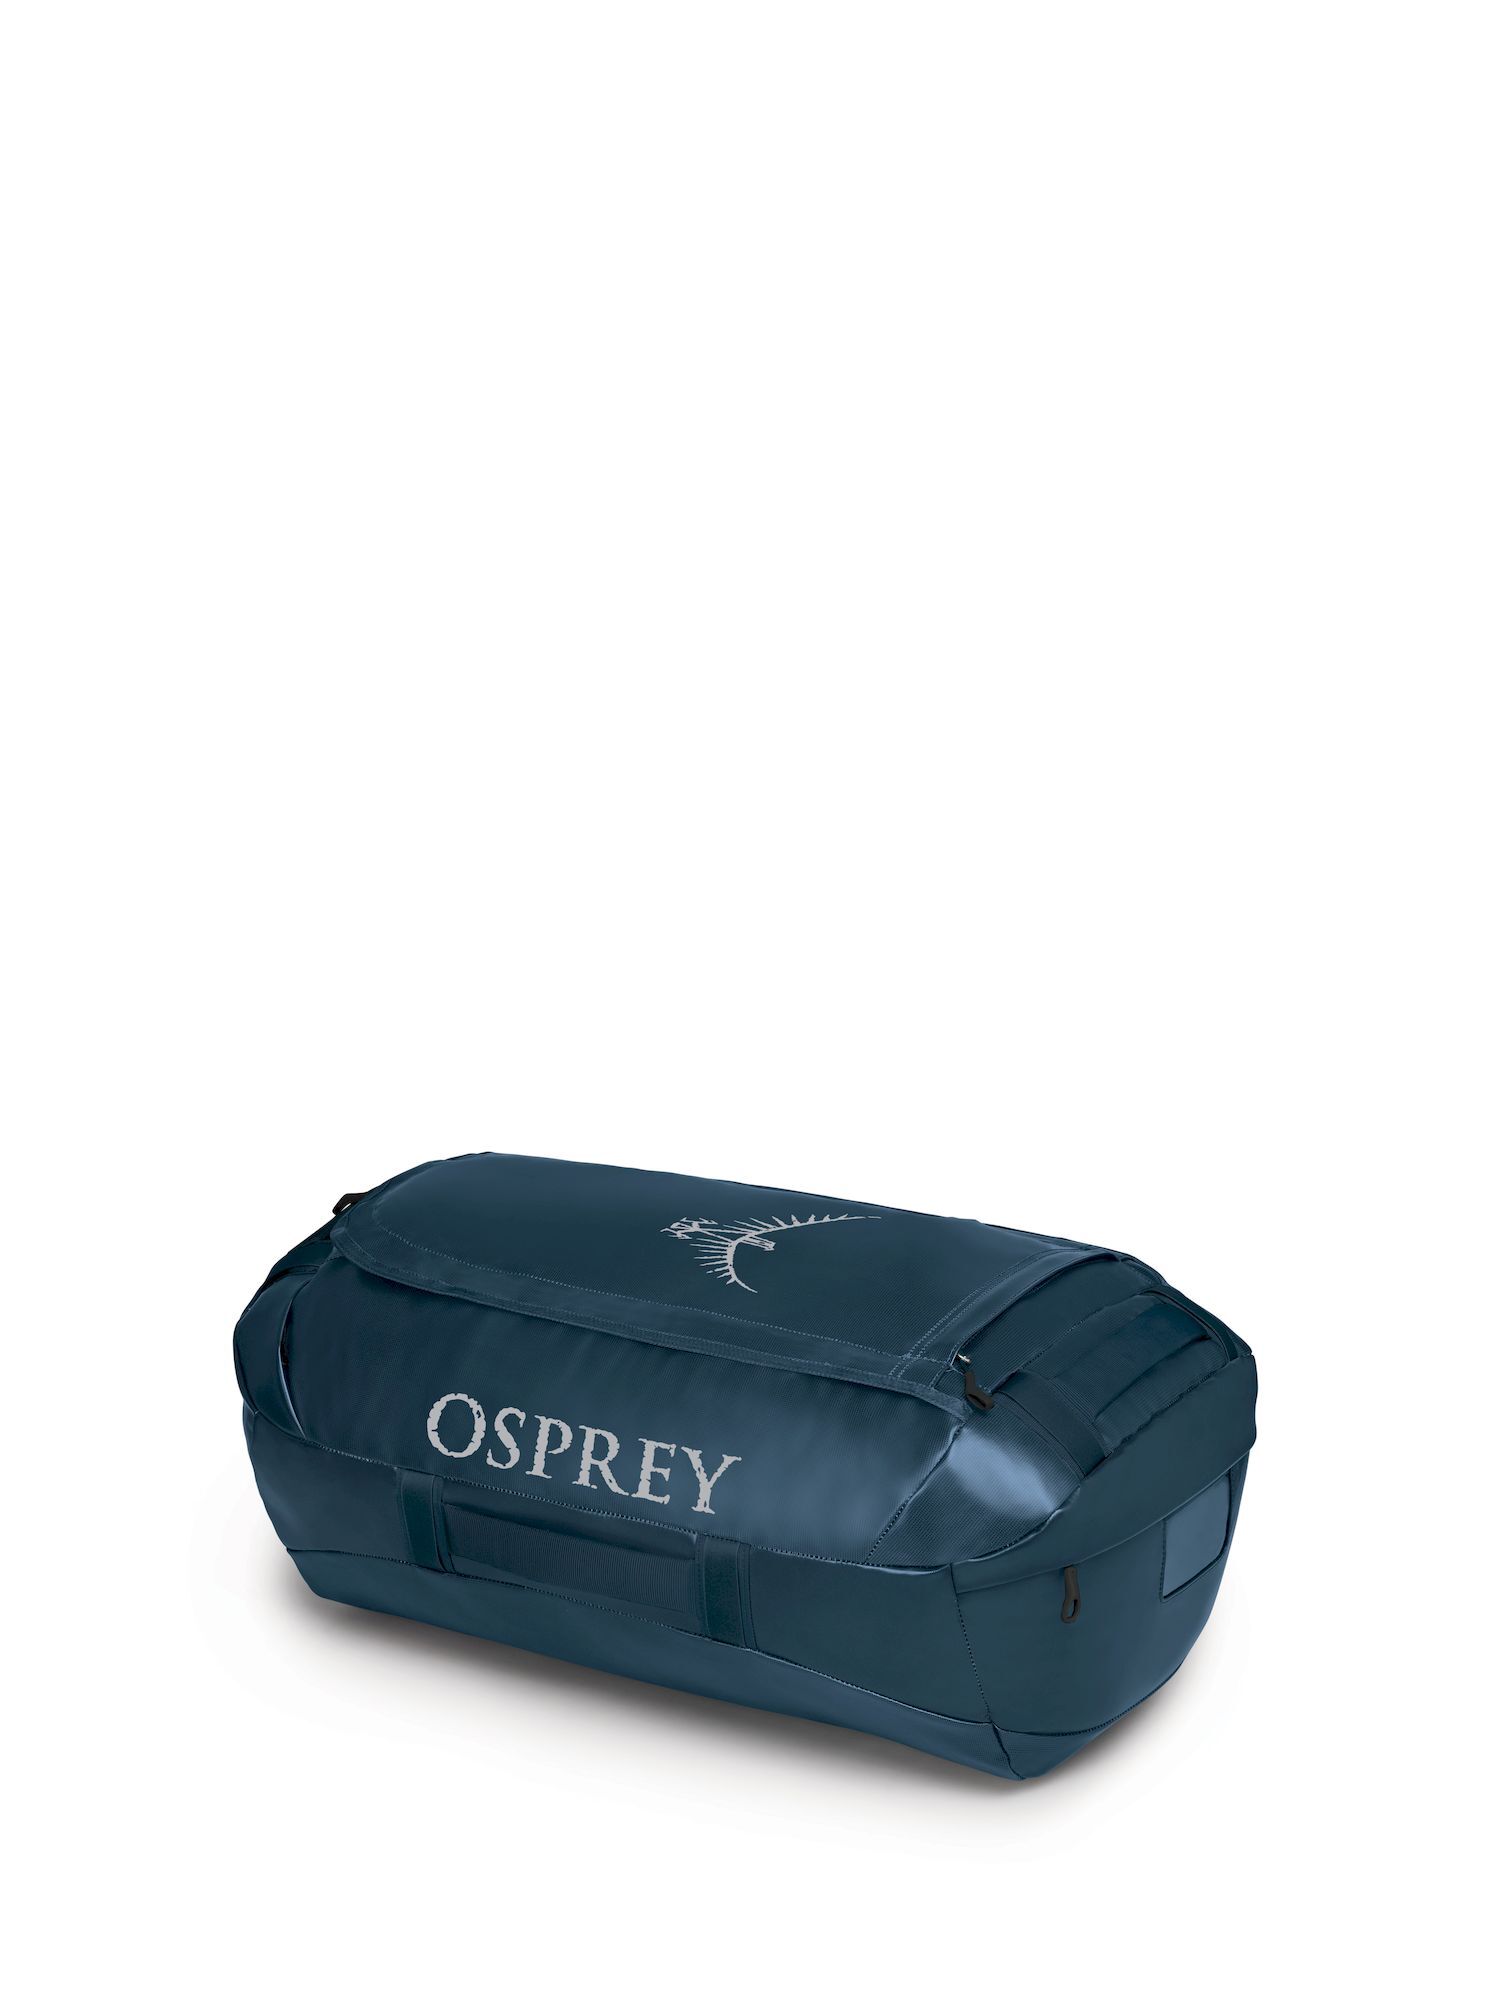 Osprey - Transporter 65 - Borsa da viaggio